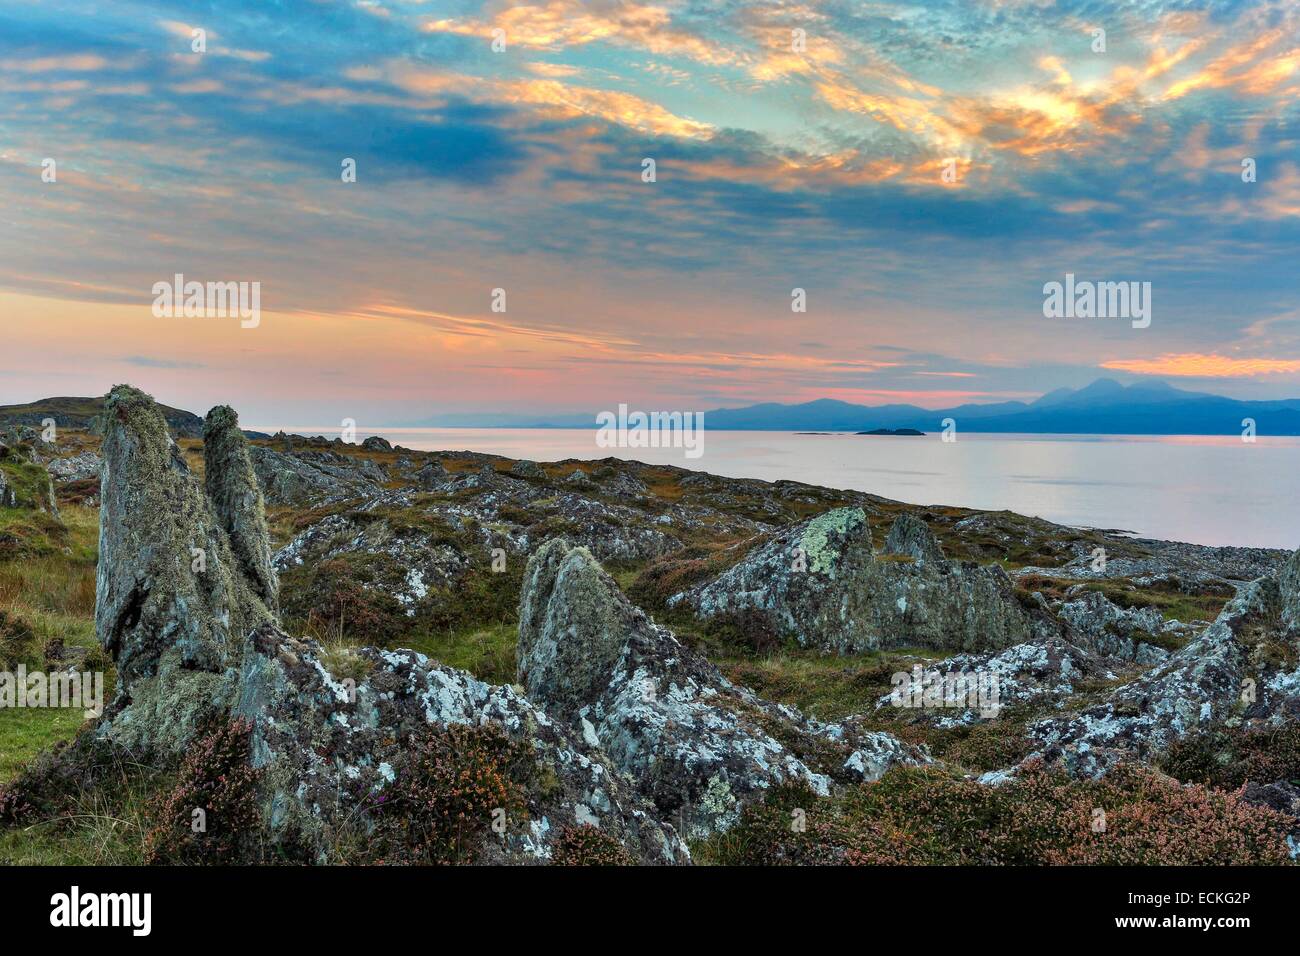 Großbritannien, Schottland, Argyll und Bute, Keillmore, Loch Sween, horizontale Ansicht von Küsten Heide und Steinen bei Sonnenuntergang Stockfoto